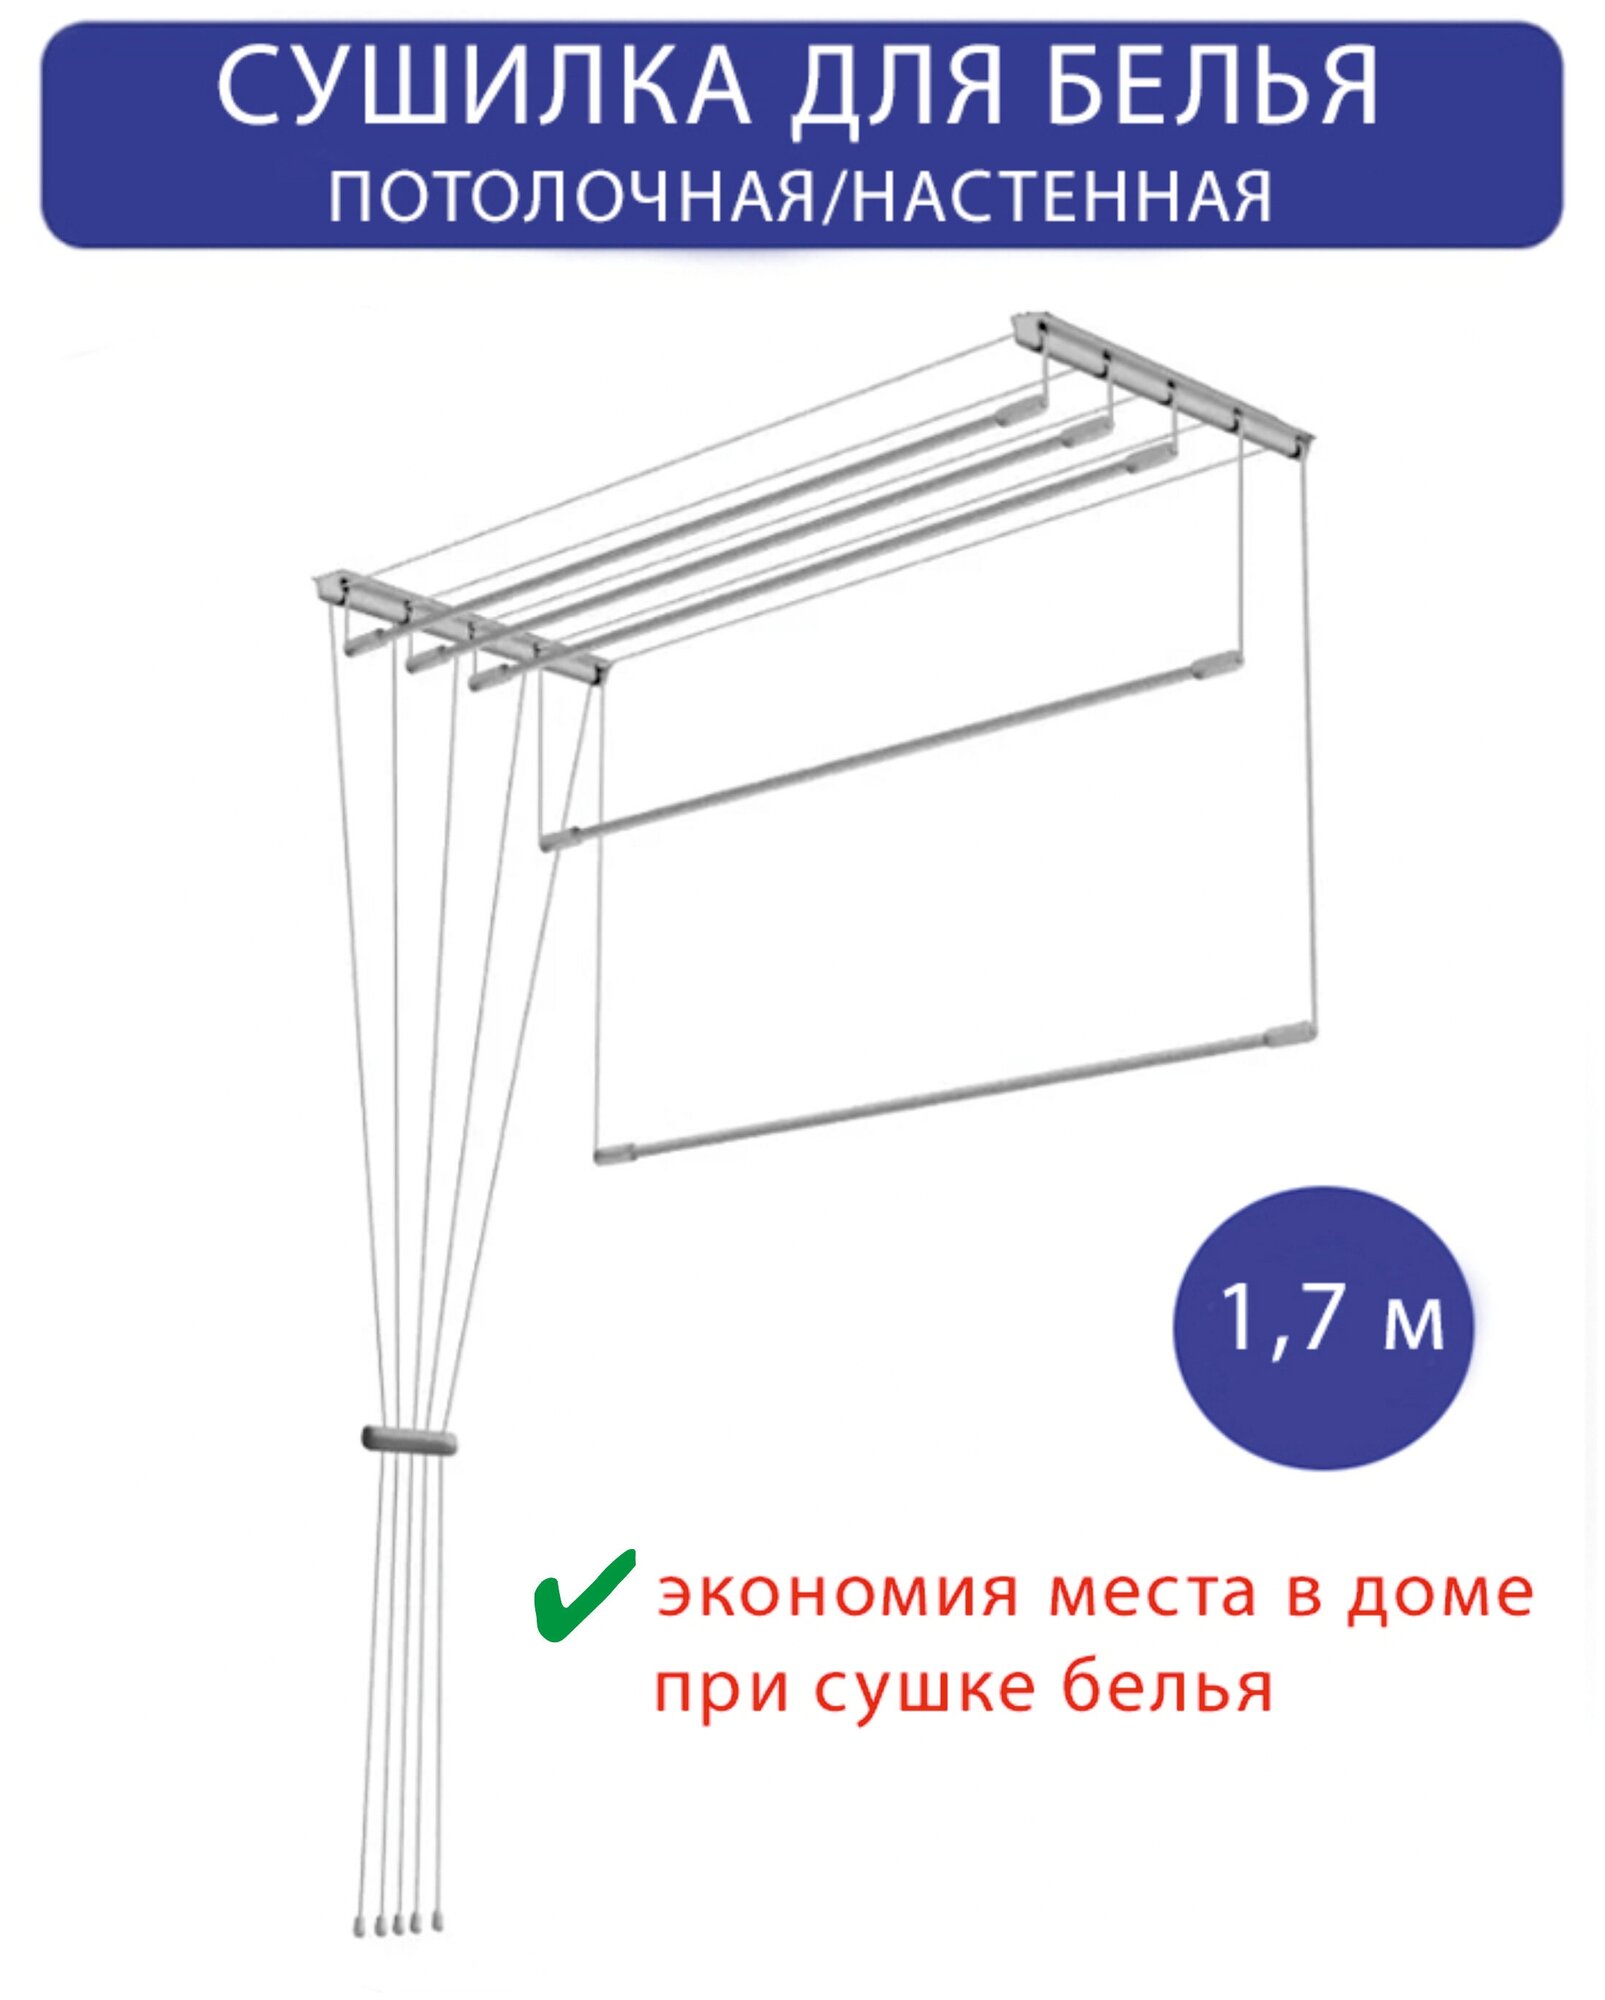 Сушилка для белья настенная/потолочная в ванную или балкон, 1,7м - фотография № 1